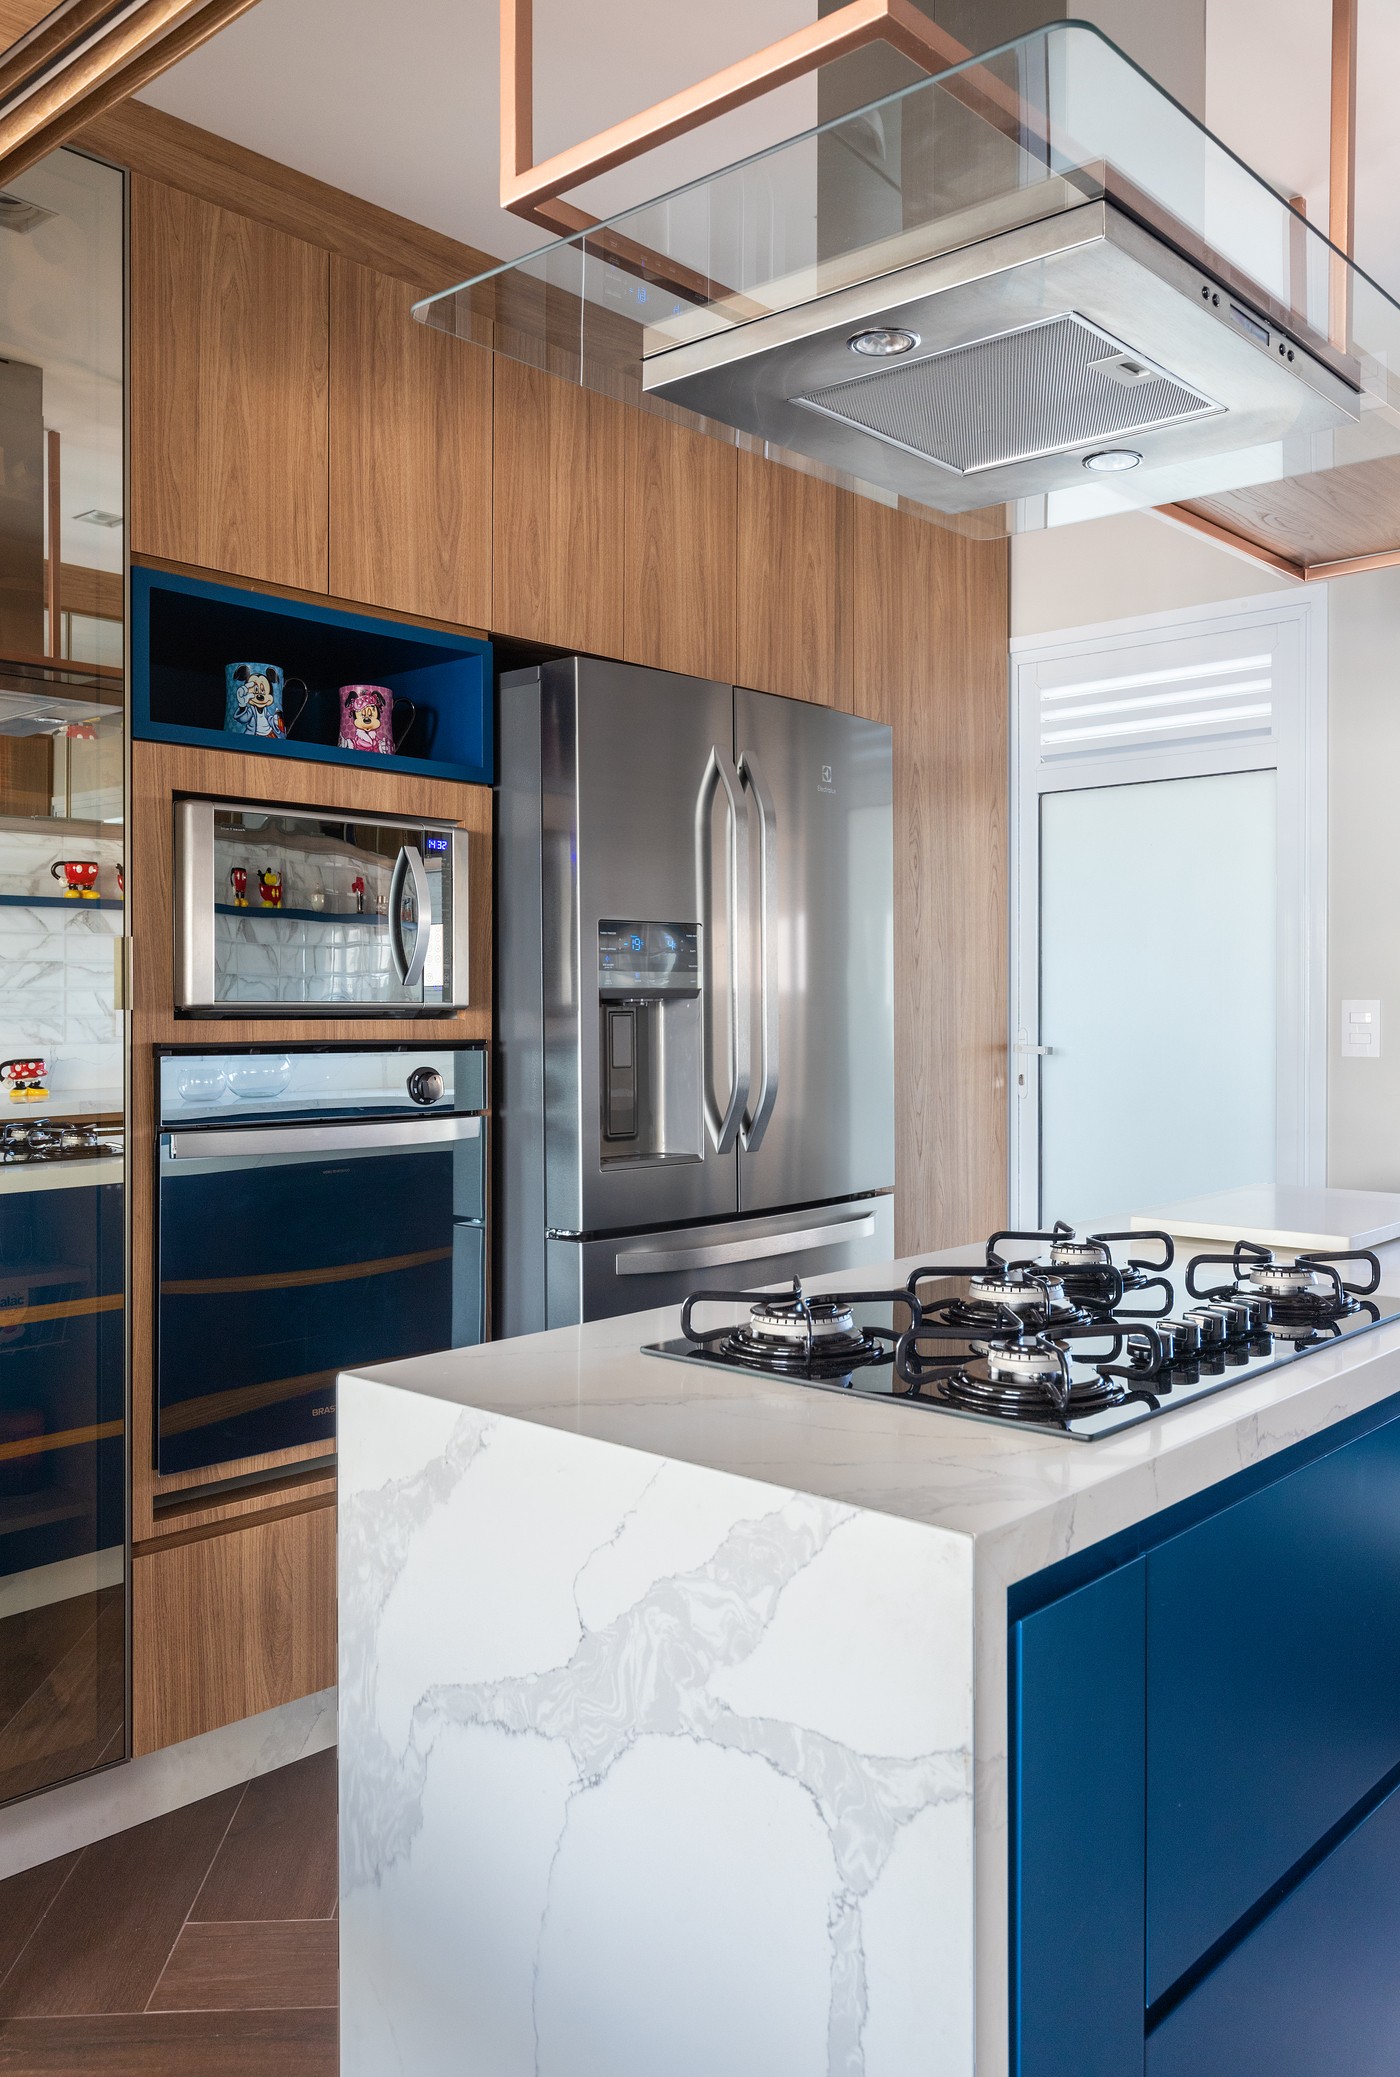 Décor do dia: cozinha integrada à sala de jantar tem ilha central e marcenaria azul (Foto: Fernando Crescenti)